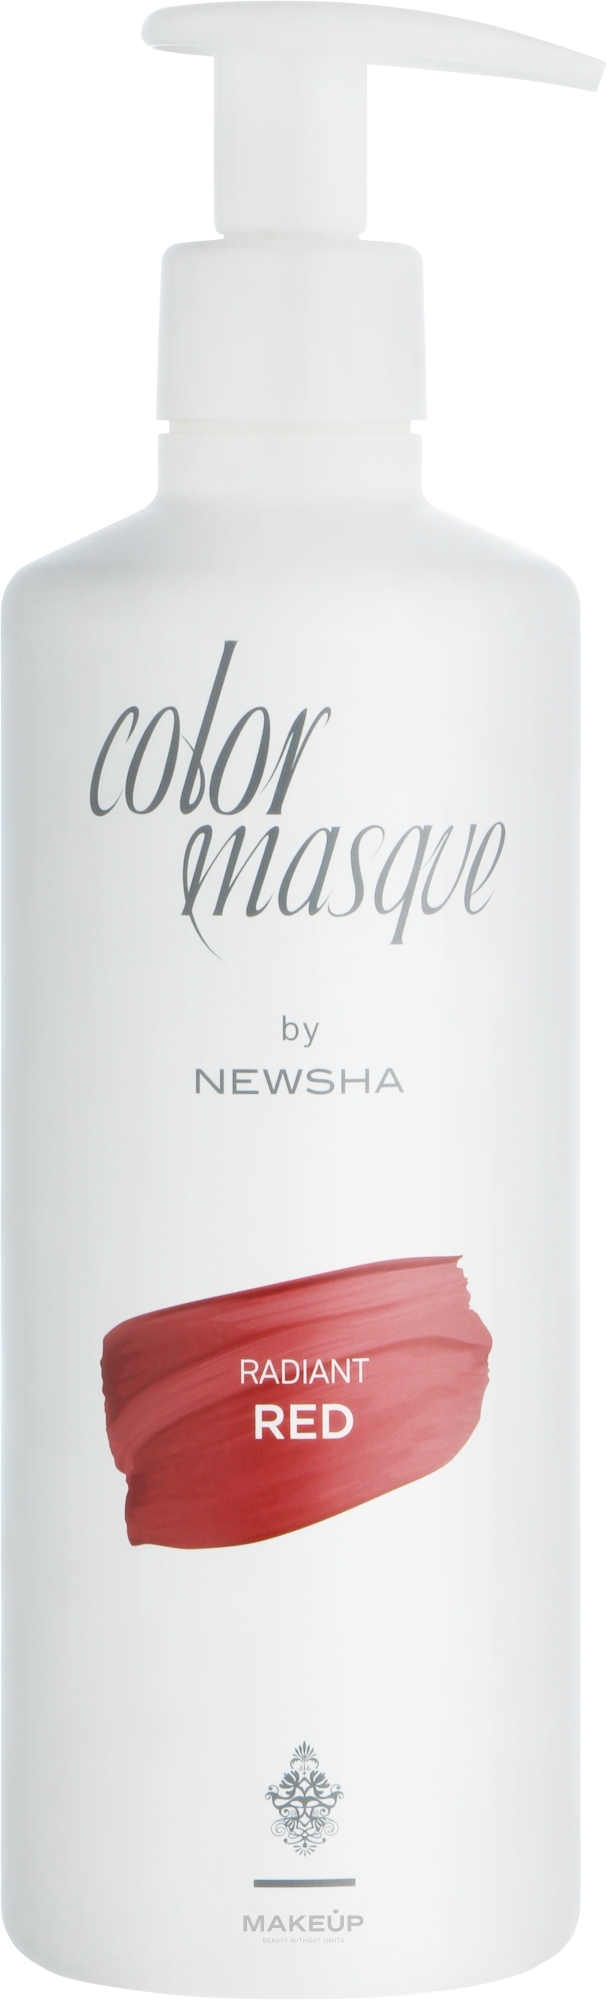 Кольорова маска для волосся - Newsha Color Masque Radiant Red — фото 500ml